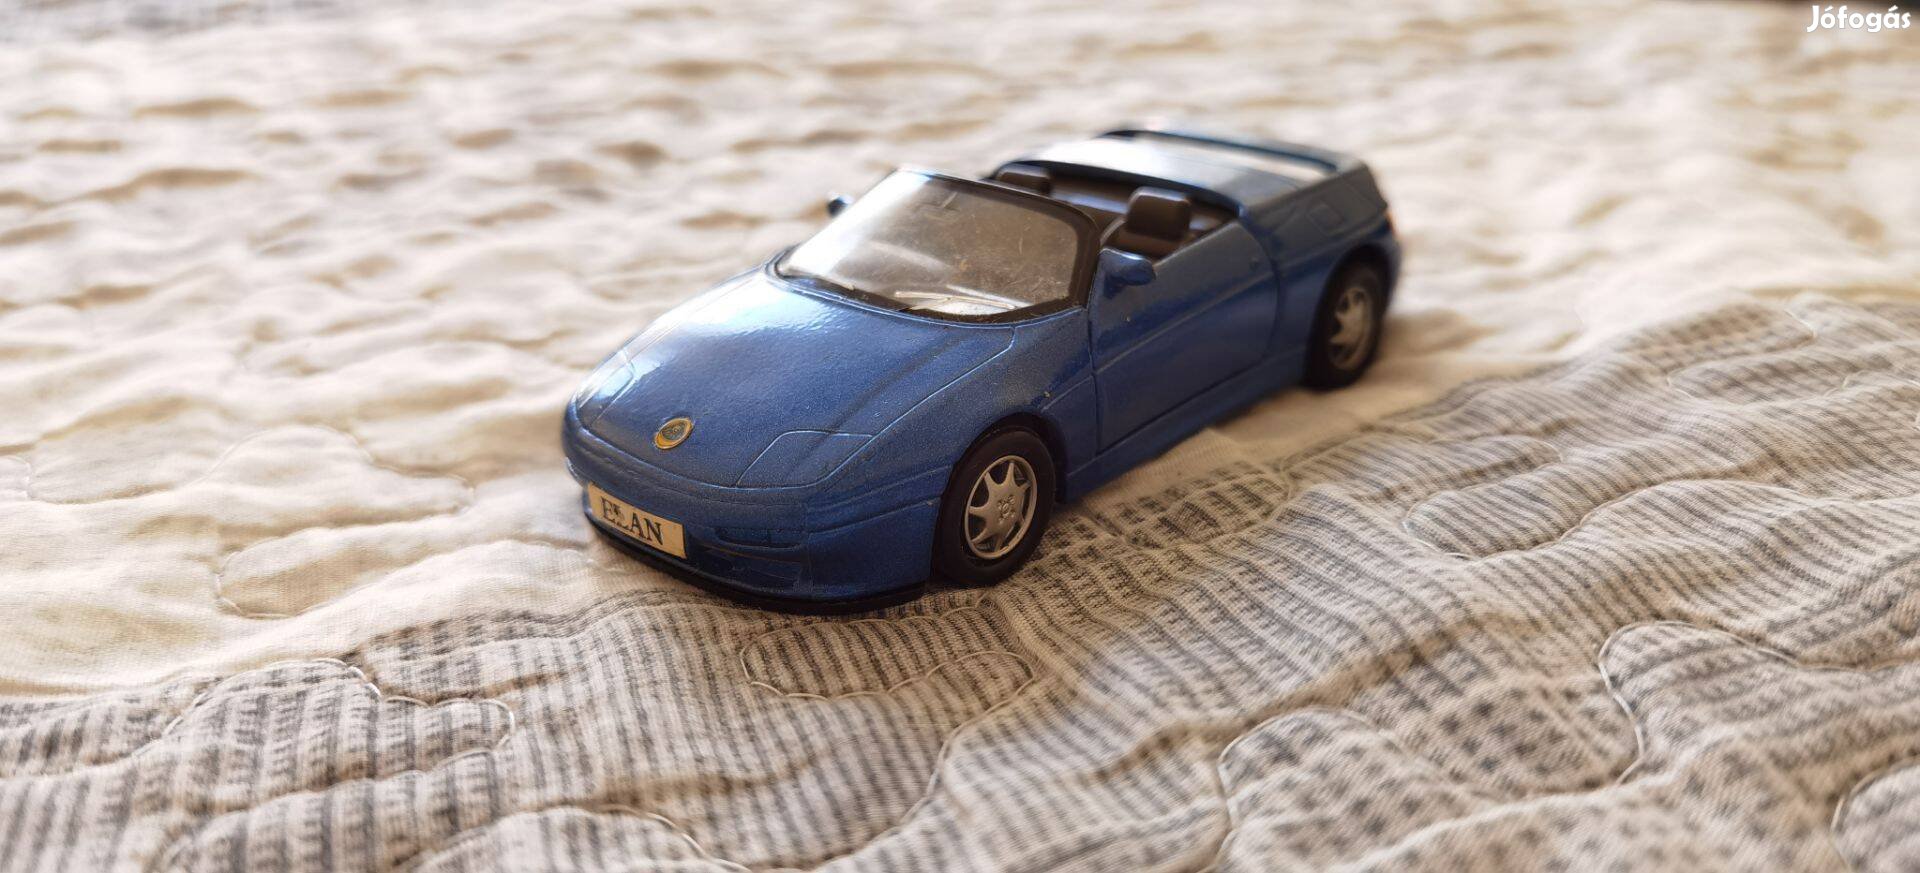 Lotus elan kisautó versenyautó játék 1:36 makett mc toy modell